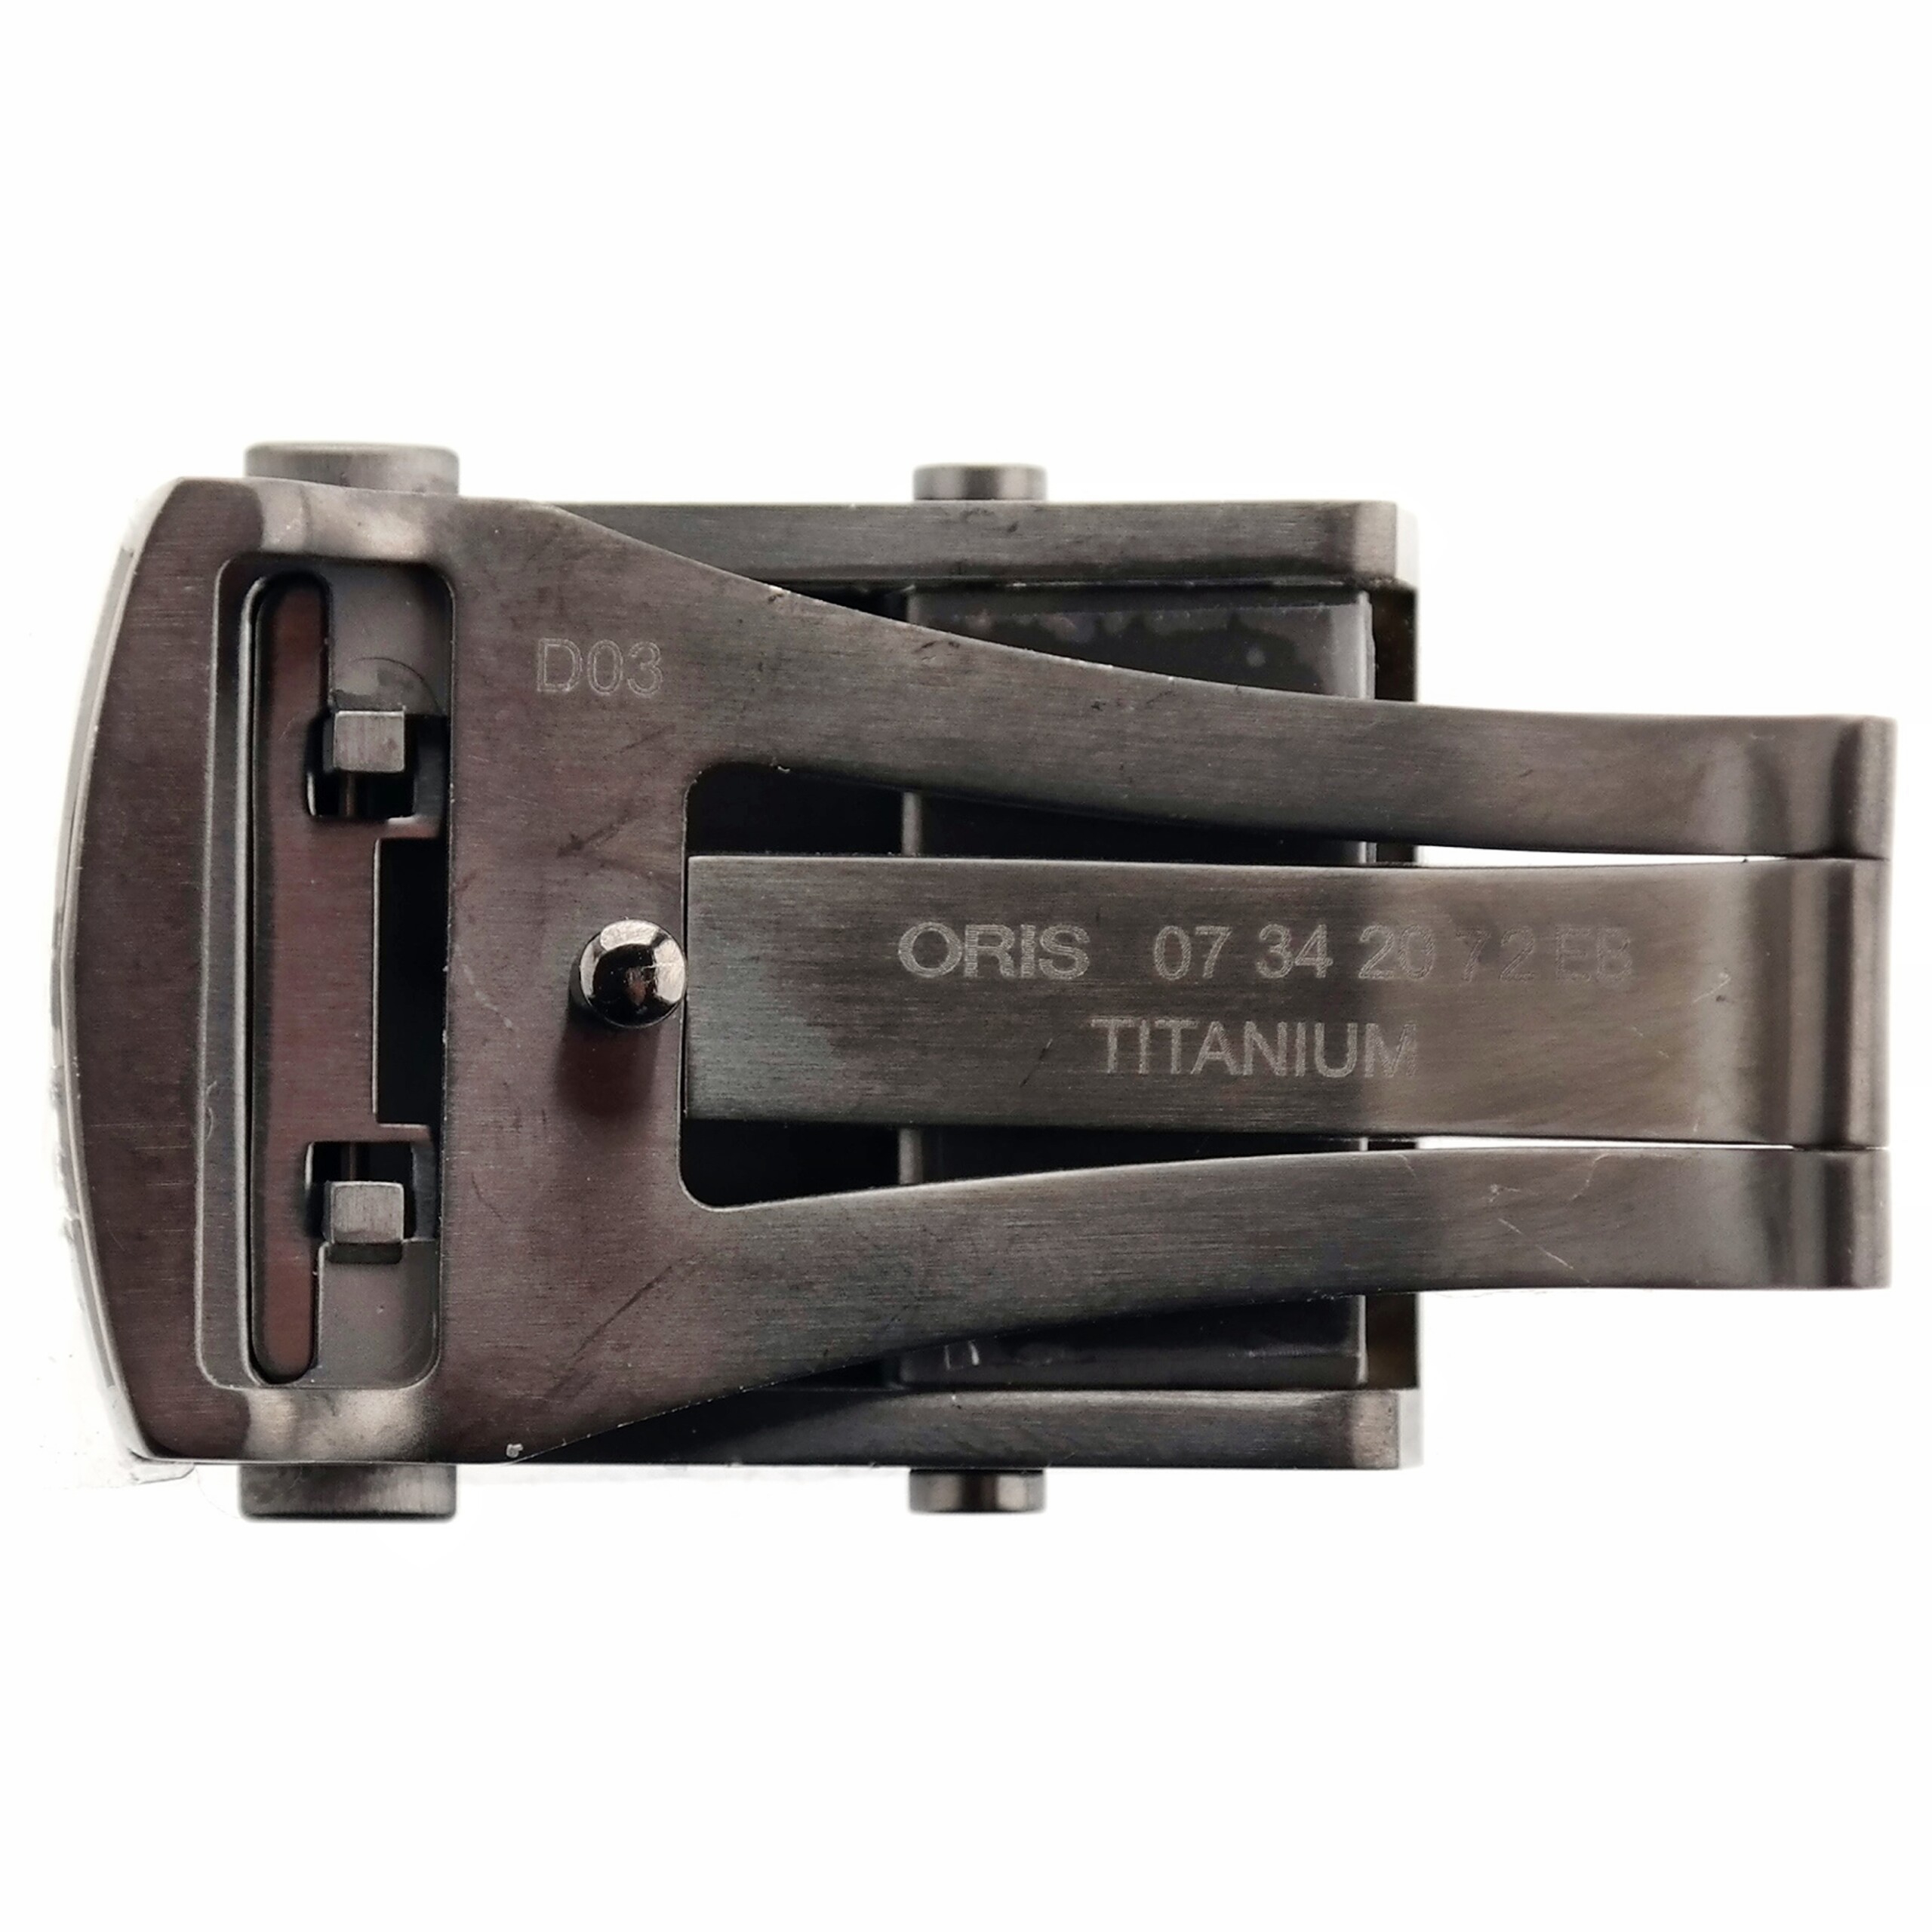 Authentic ORIS Aquis - Deployant Clasp - Buckle - 07342072EB - Titanium - 20 mm